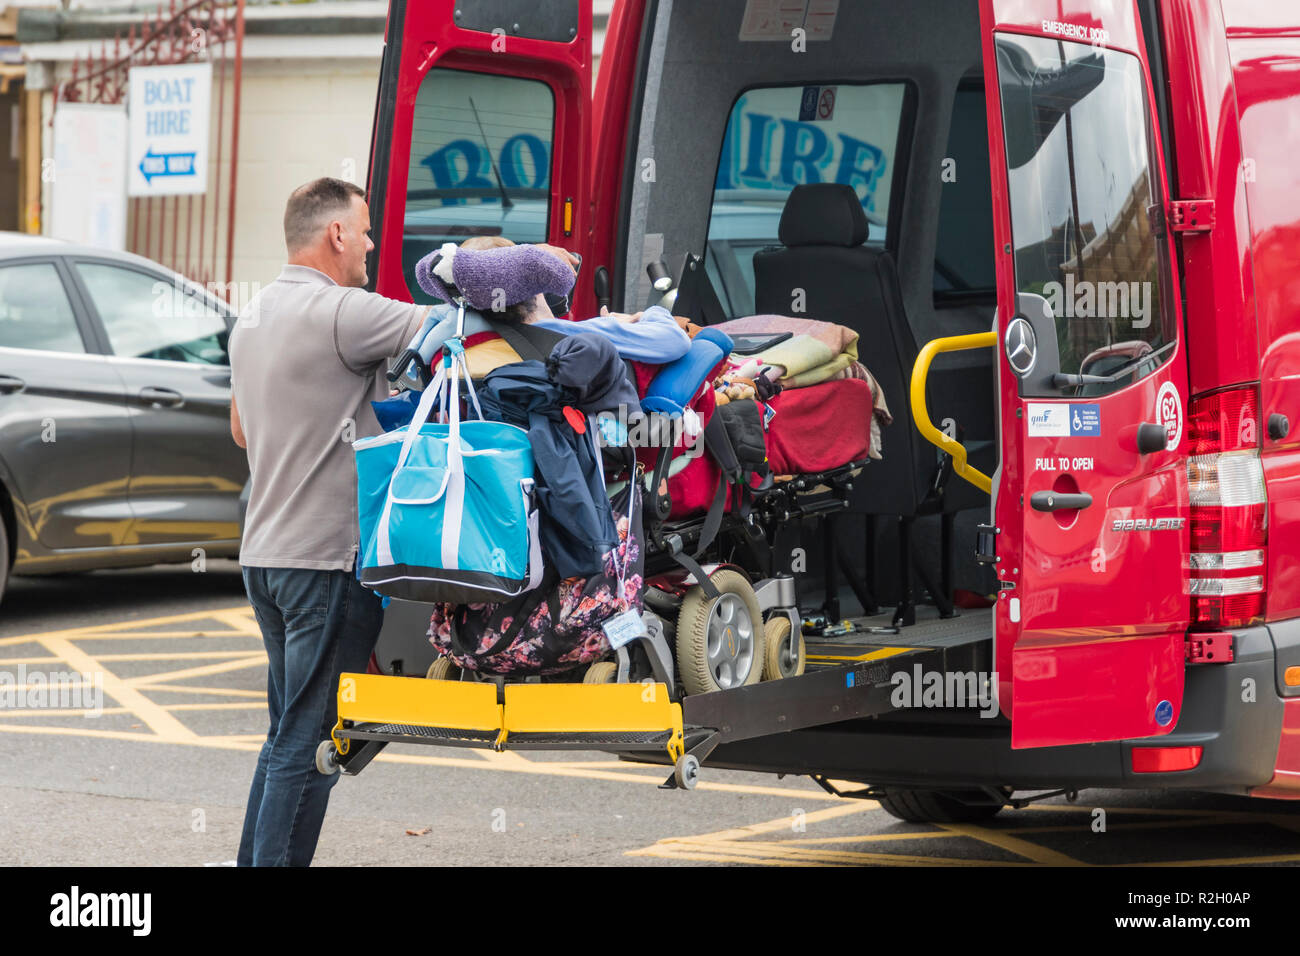 Un uomo aiutando a disabili persone svantaggiate nella parte posteriore di un veicolo nel Regno Unito. Foto Stock